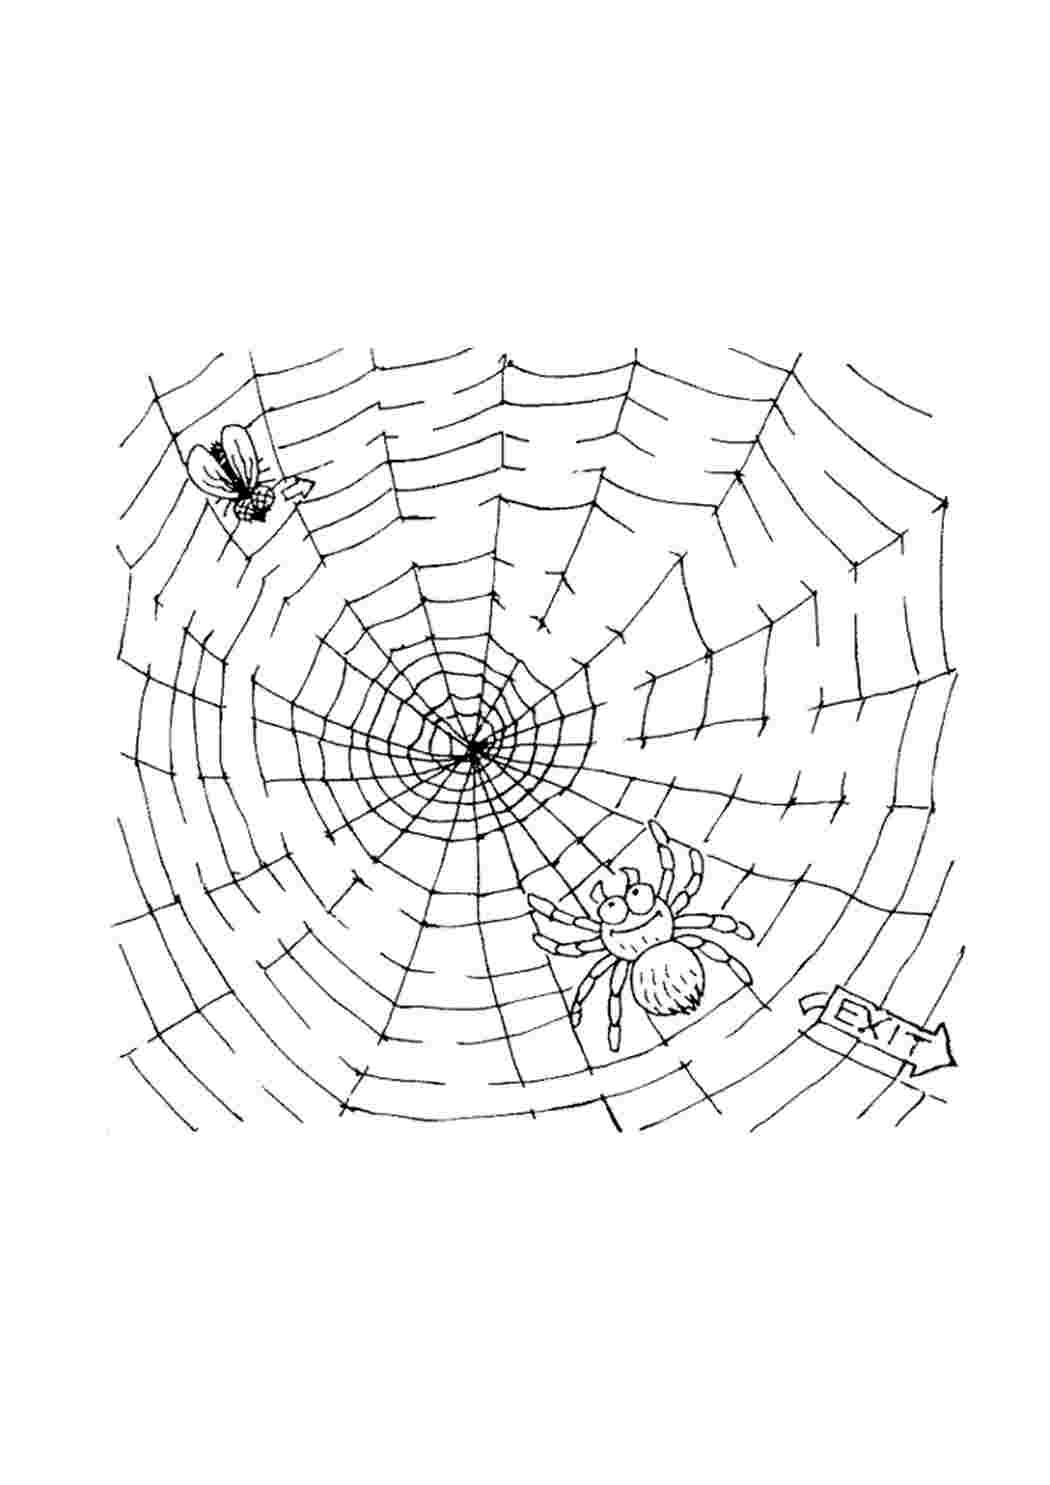 Паутина паук Изображения – скачать бесплатно на Freepik